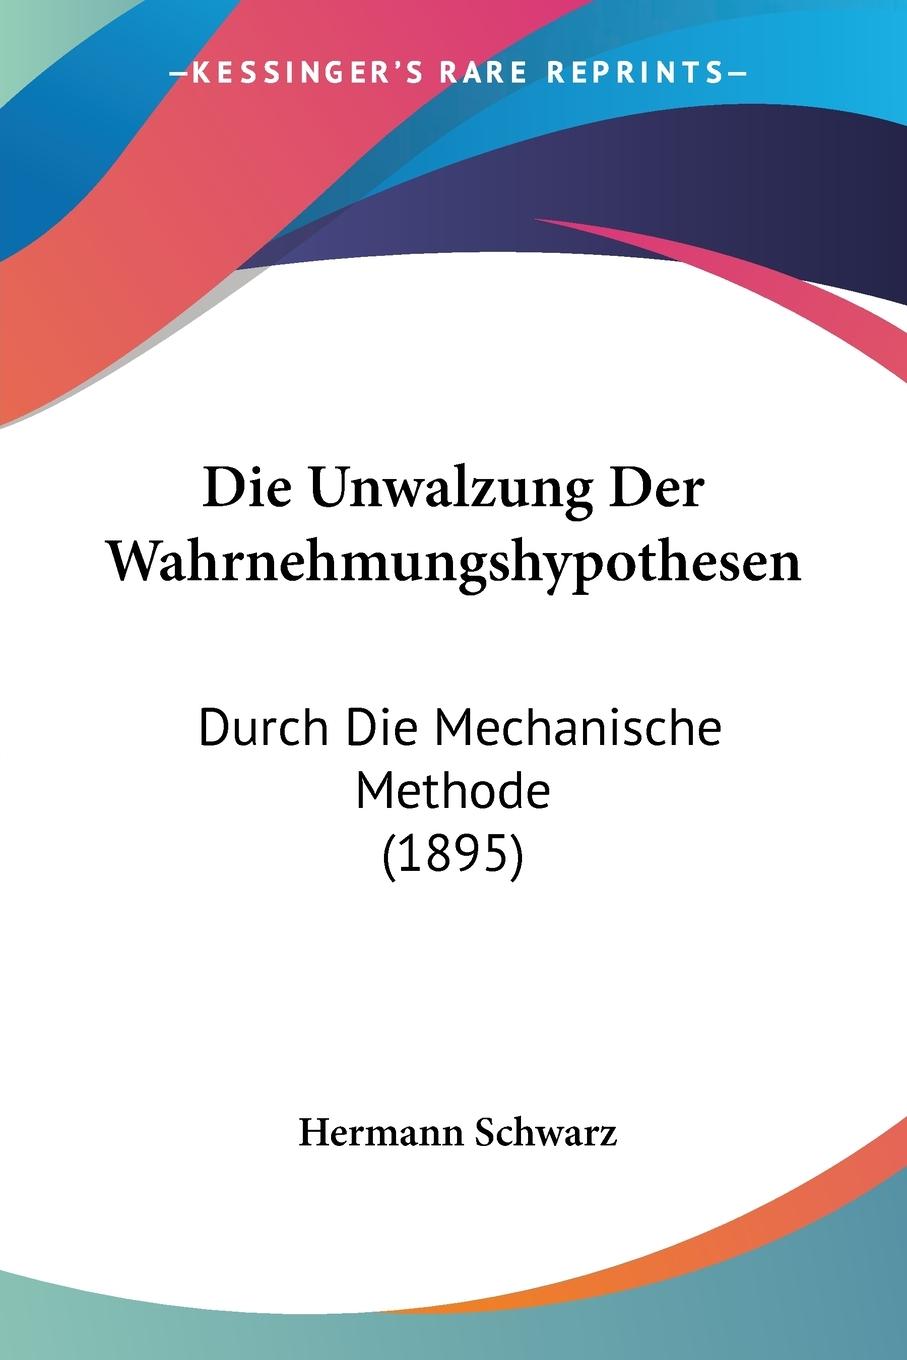 Die Unwalzung Der Wahrnehmungshypothesen - Schwarz, Hermann